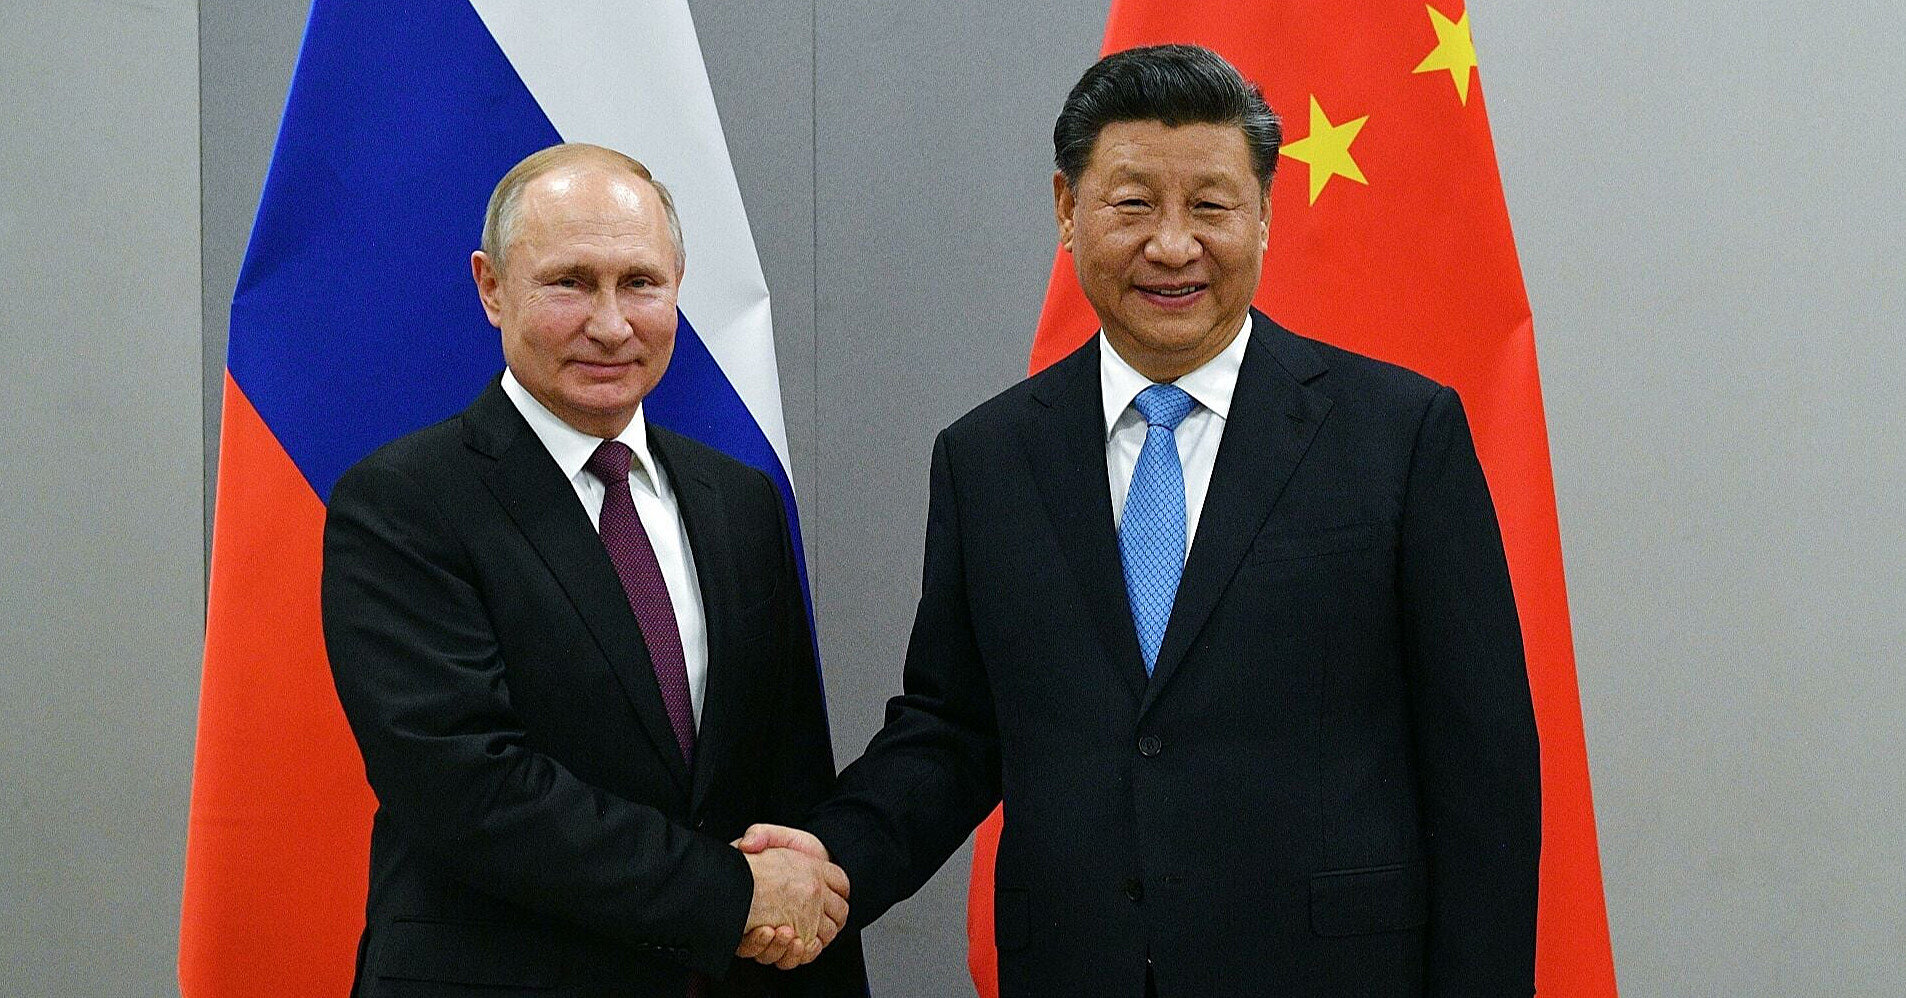 Путин планирует посетить Китай: СМИ узнали дату и цель визита